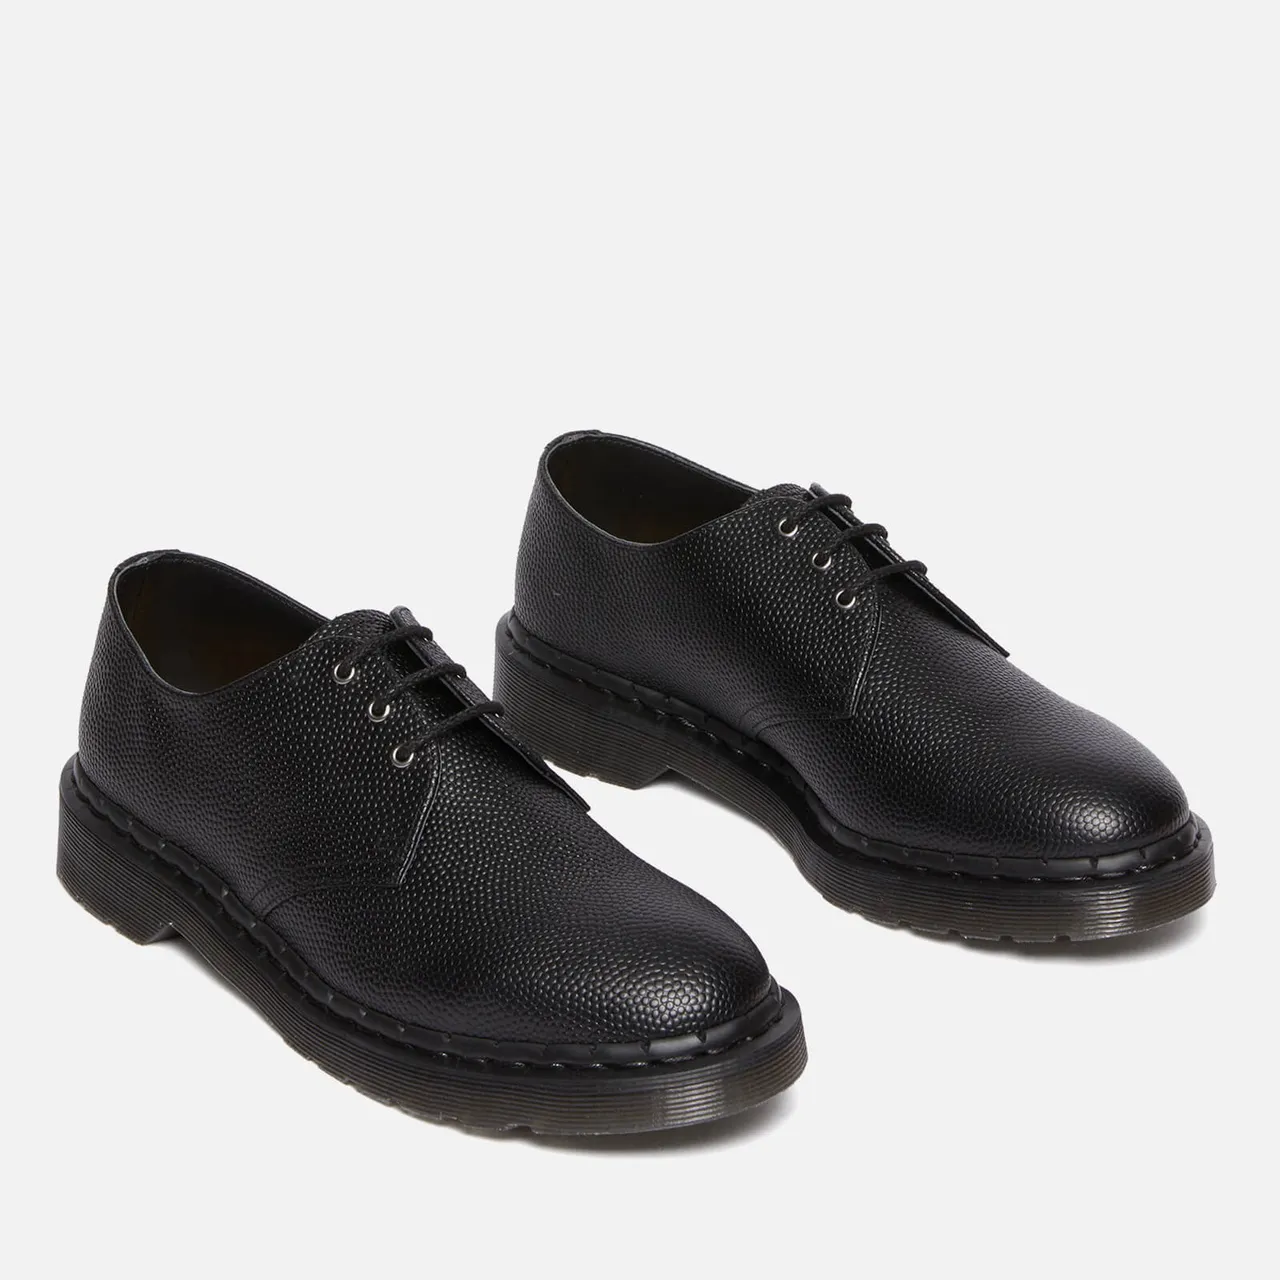 Dr. Martens Men's 1461 Pebbled Leather Shoes - UK